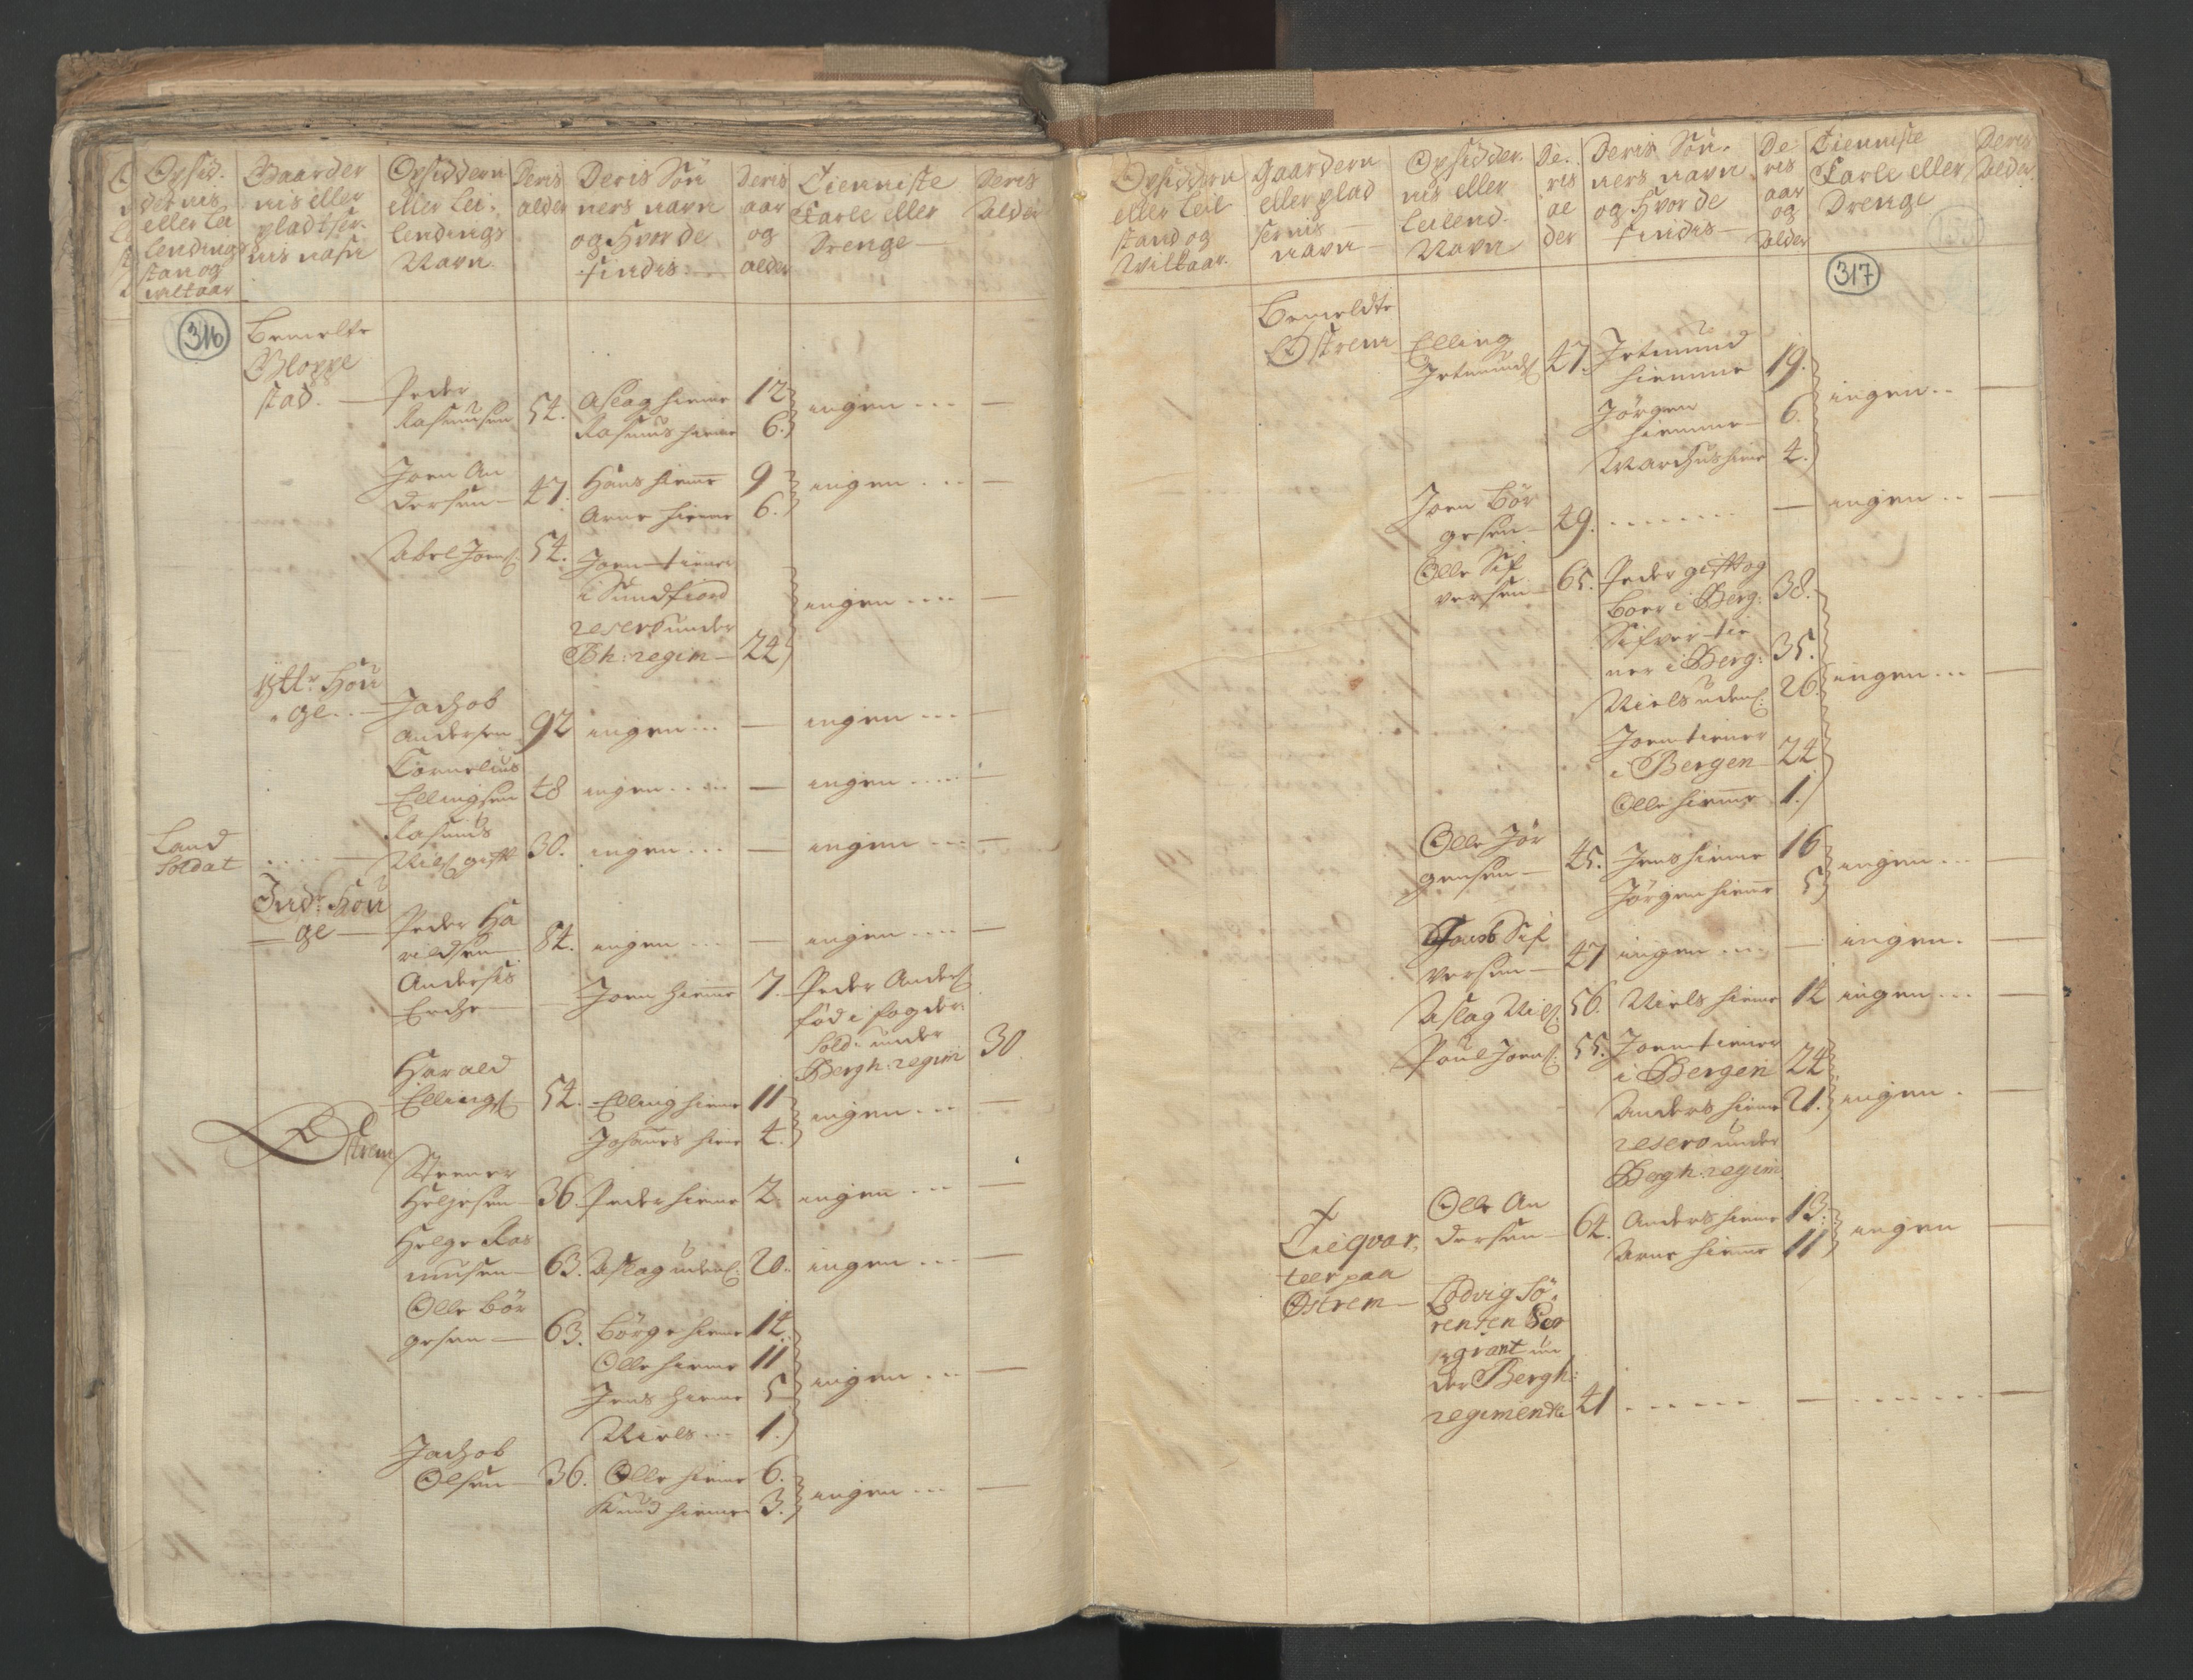 RA, Census (manntall) 1701, no. 9: Sunnfjord fogderi, Nordfjord fogderi and Svanø birk, 1701, p. 316-317